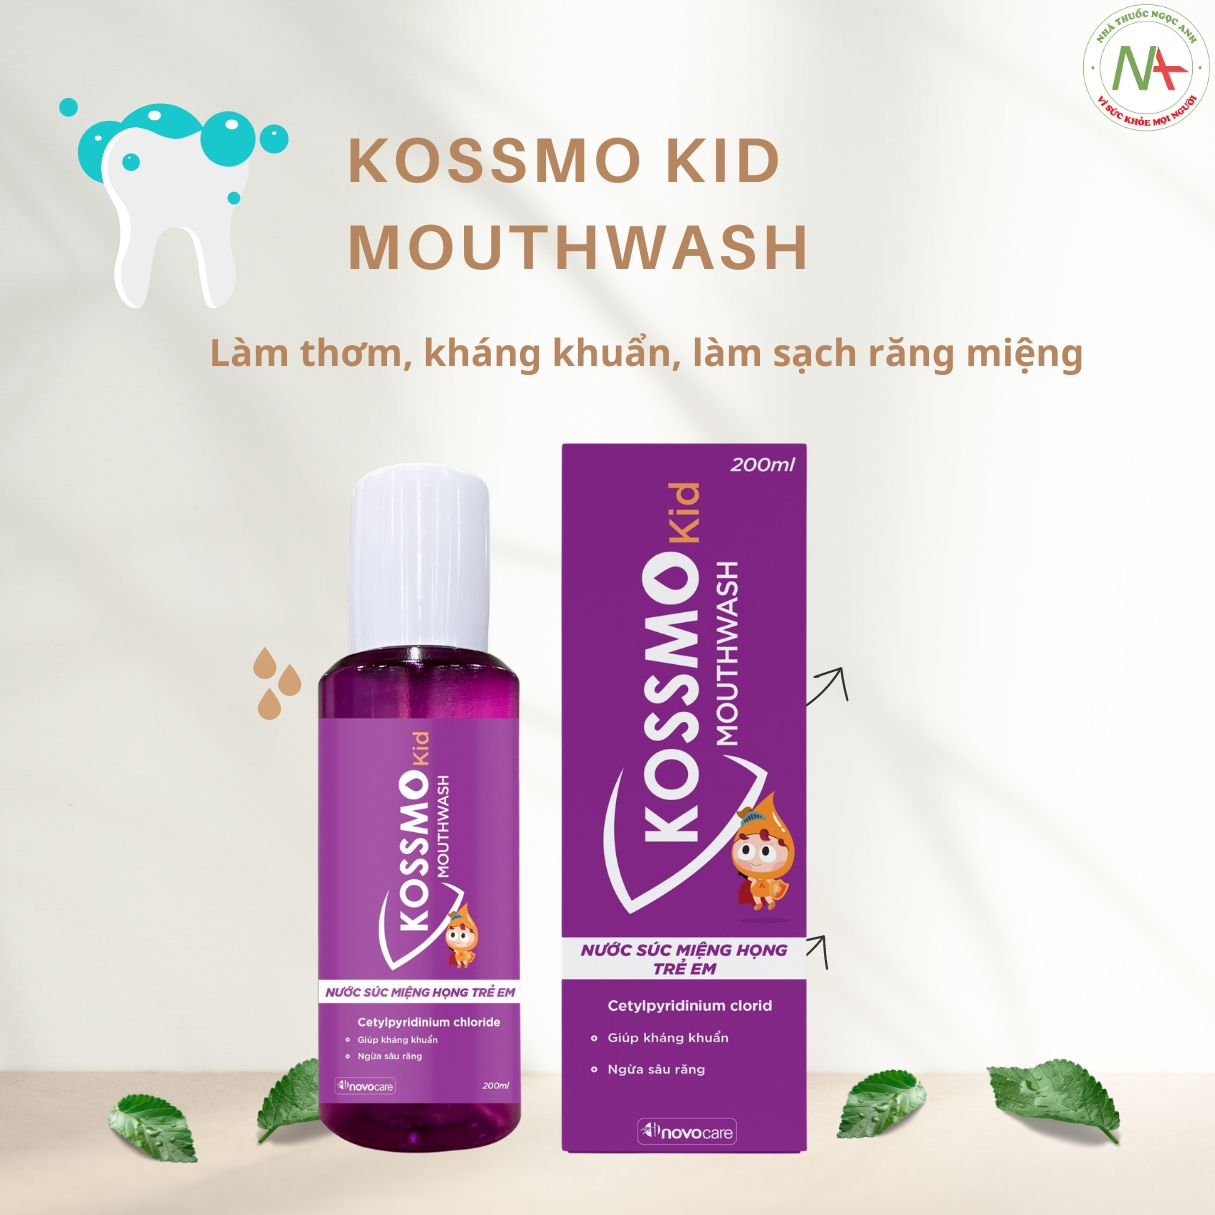 Kossmo Kid Mouthwash